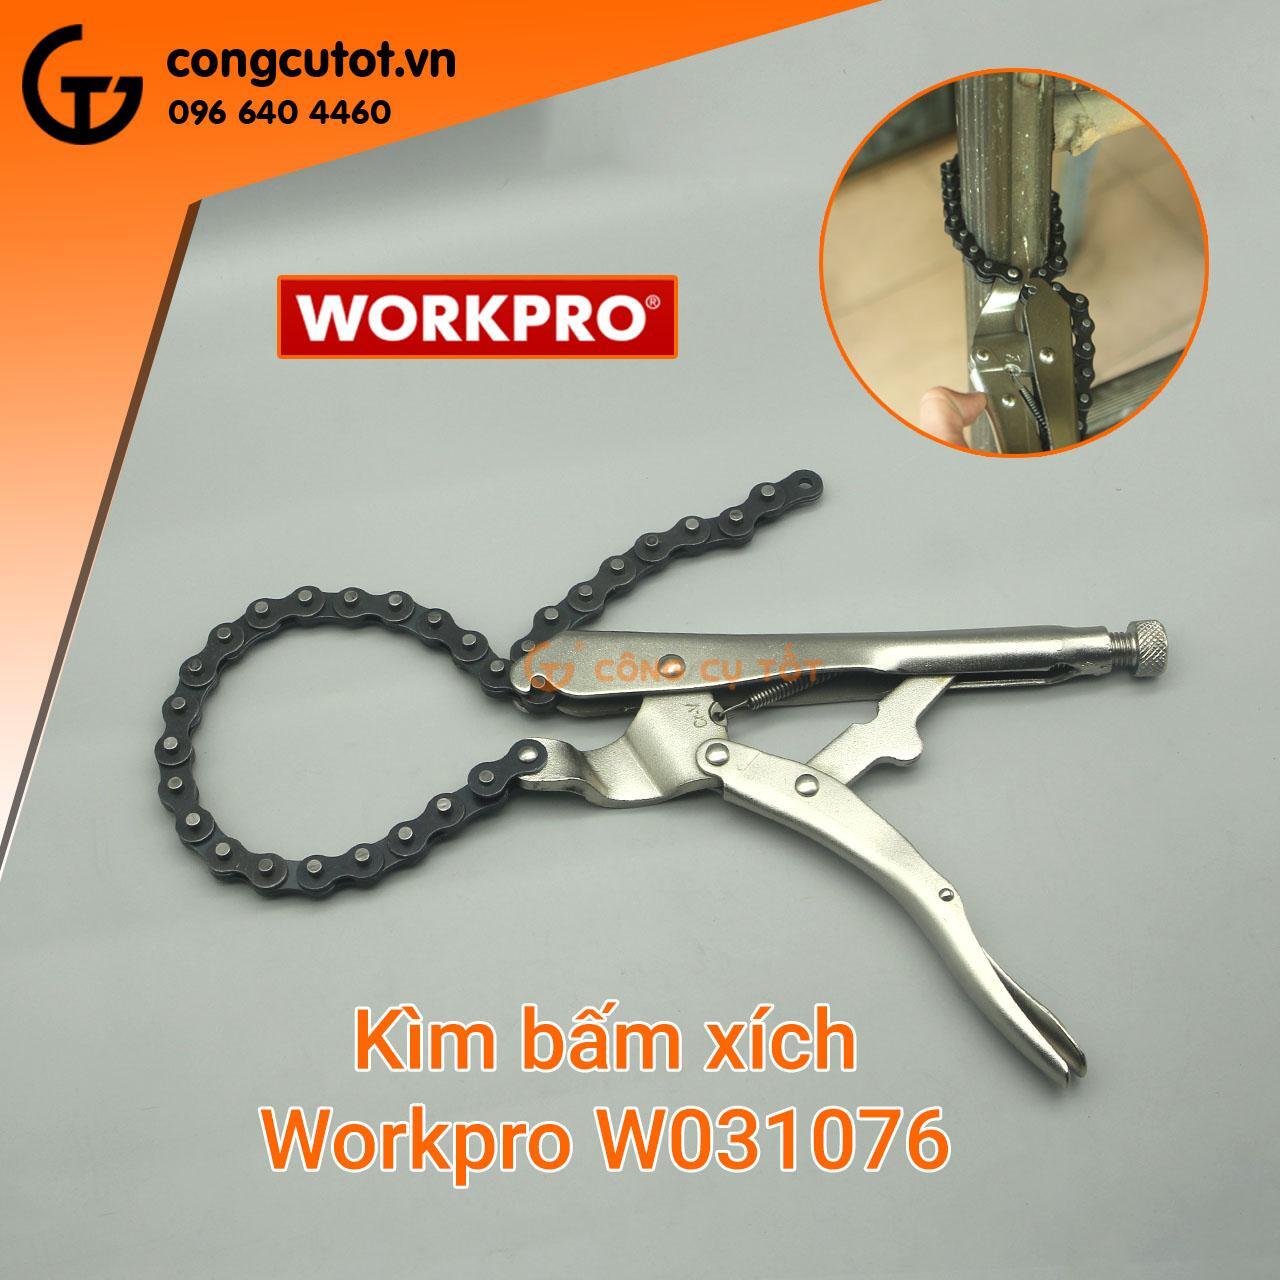 Kìm bấm xích Workpro W031076